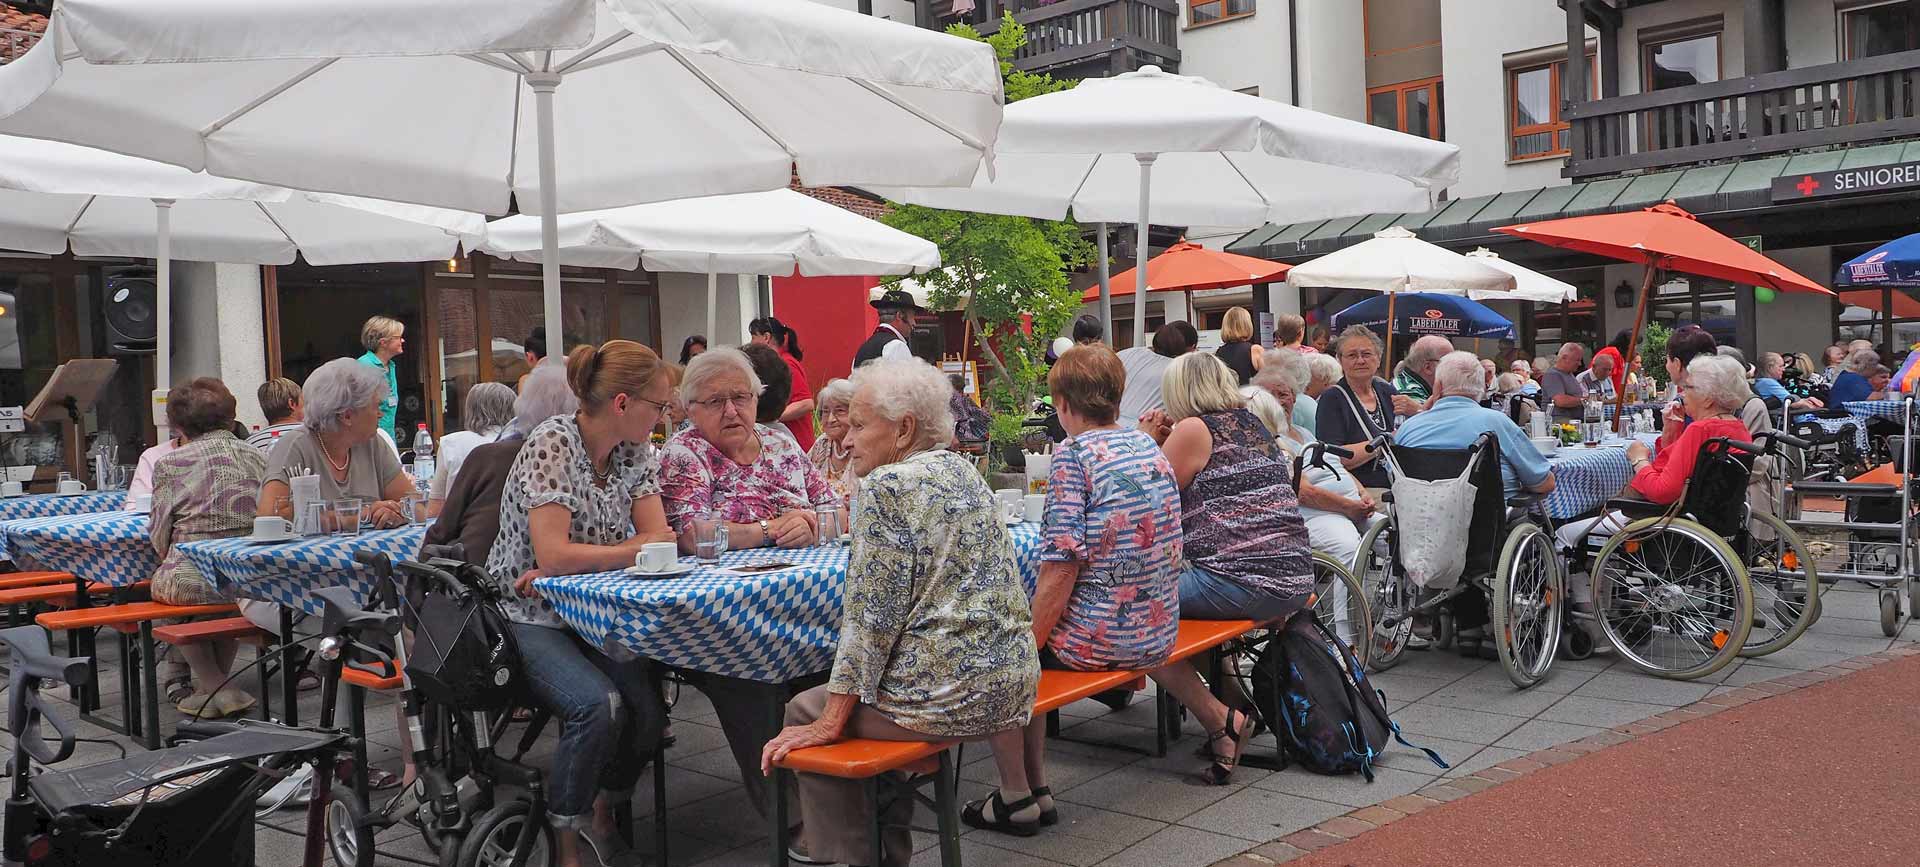 Bestens besucht war das Sommerfest der Seniorenwohnanlage Lugerweg des BRK in Bad Abbach (Foto: br-medienagentur)